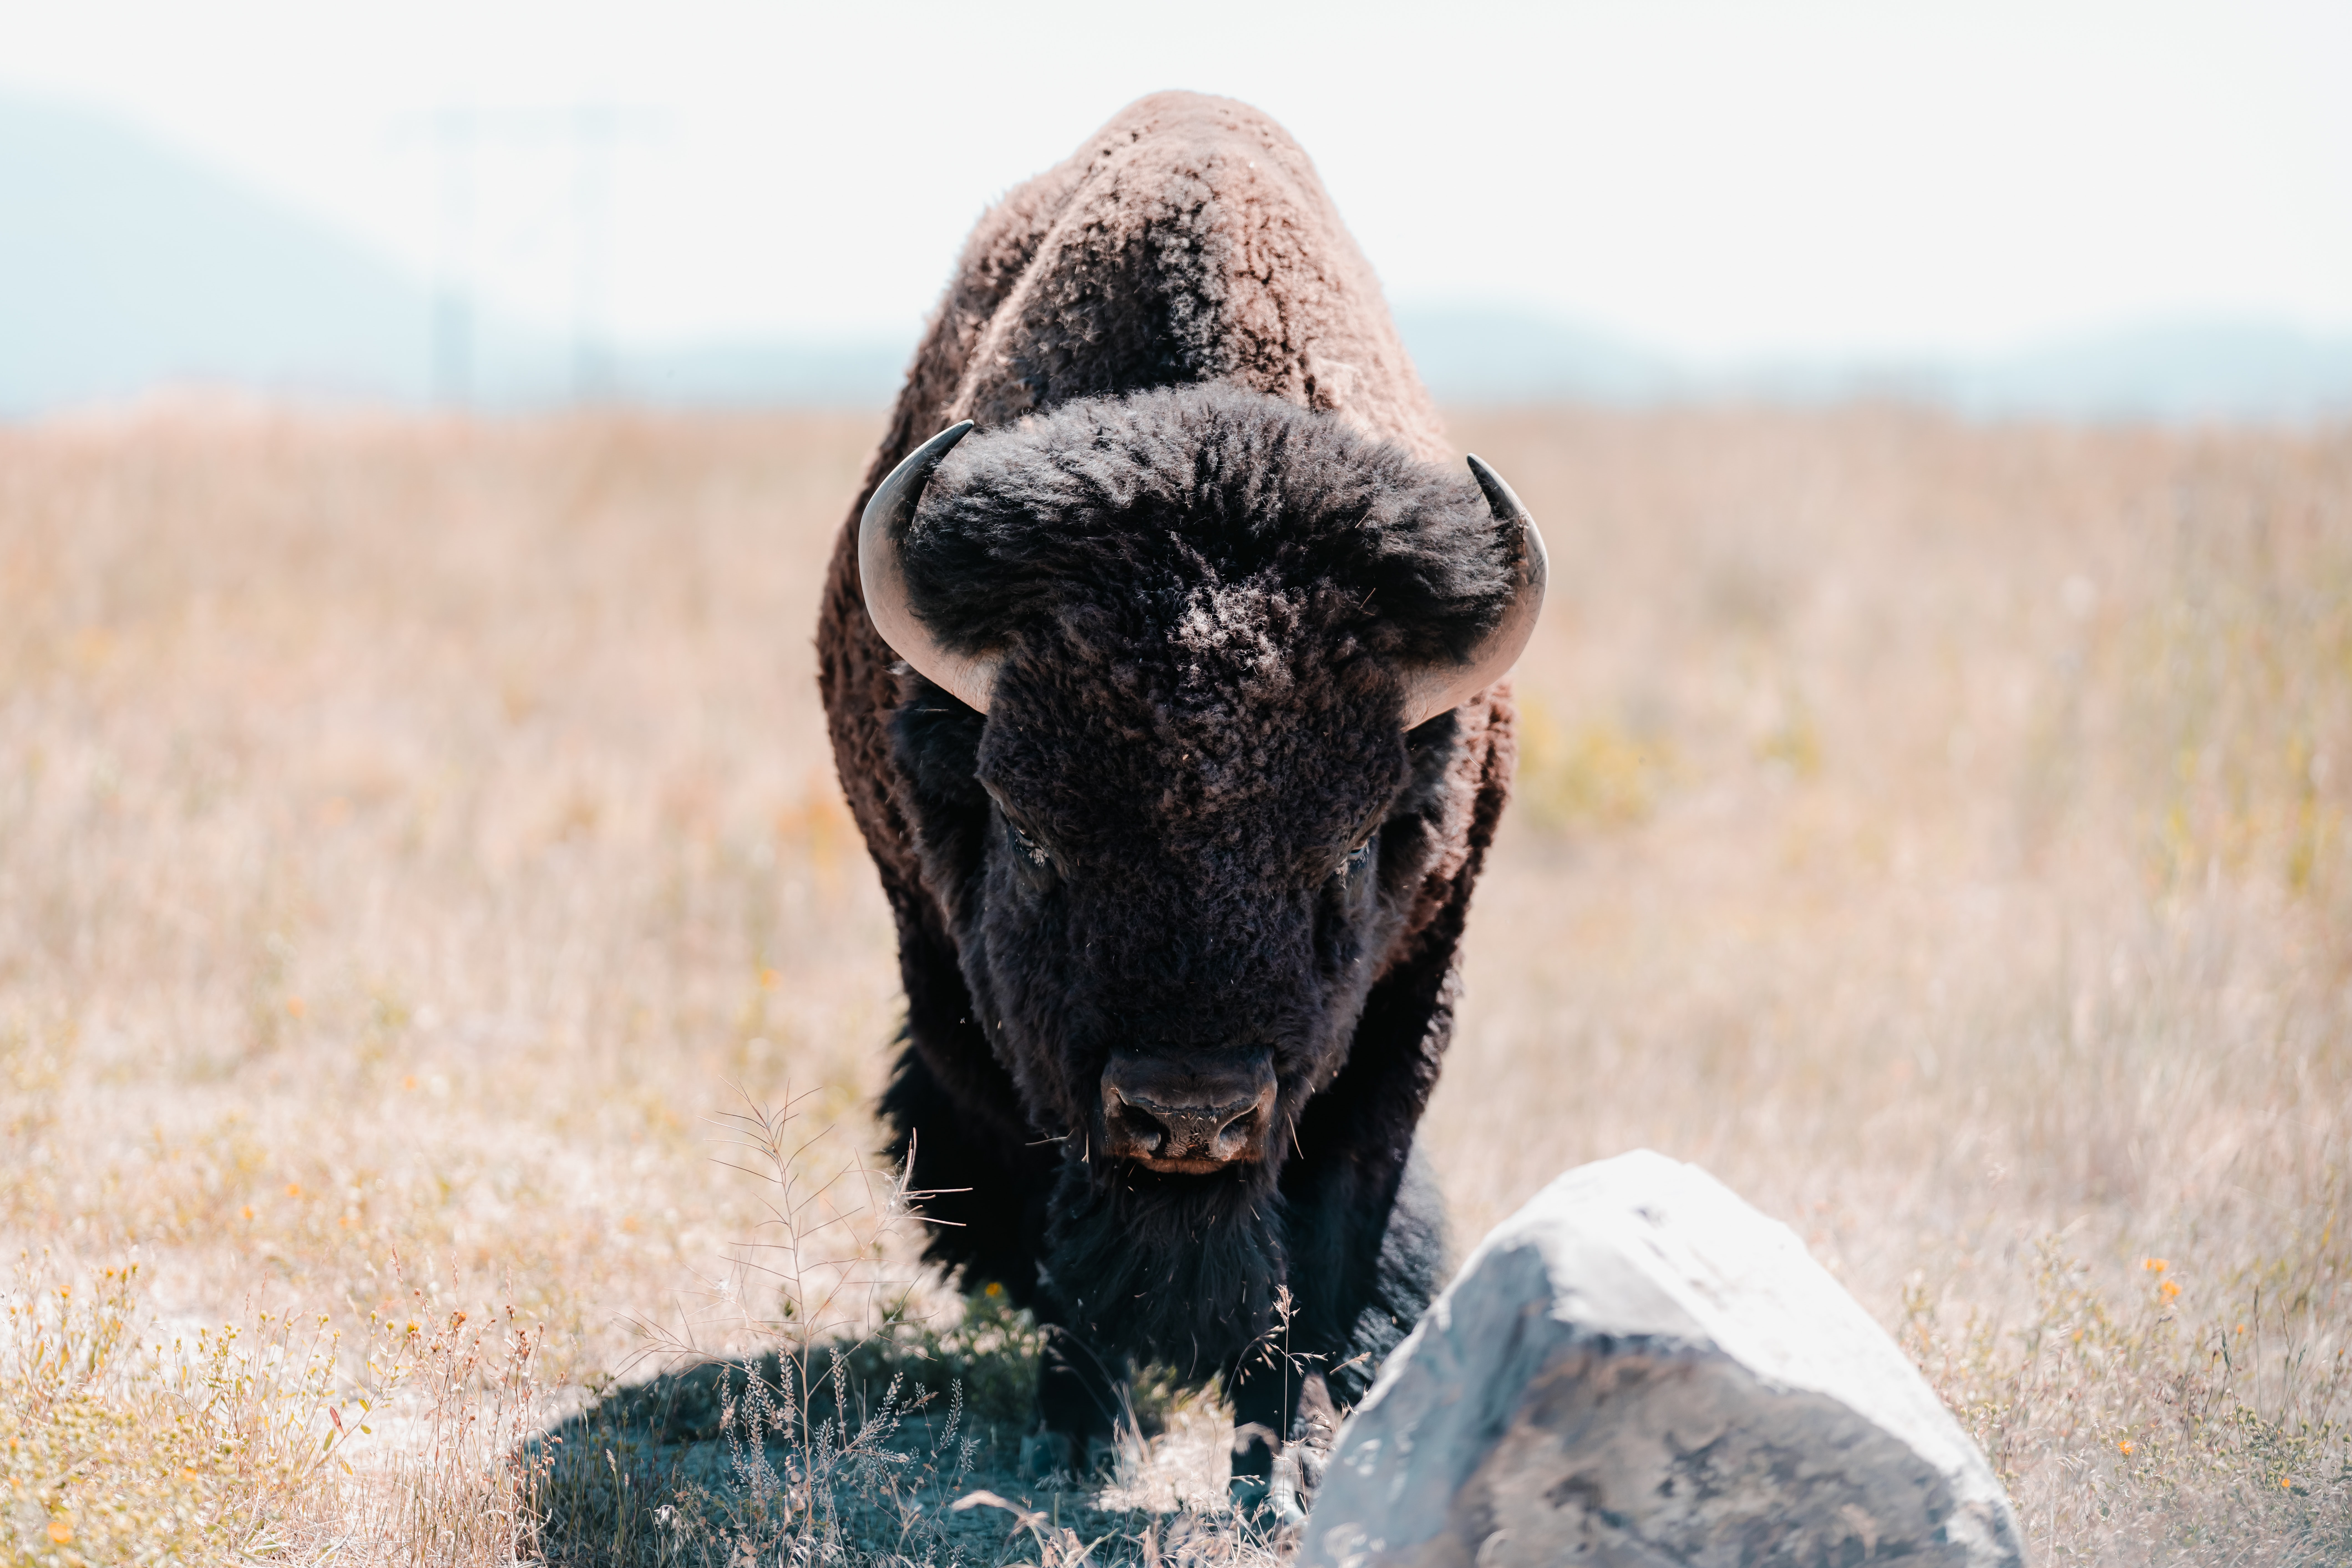 🦬 Bison are bringing biodiversity back to Kansas prairie land